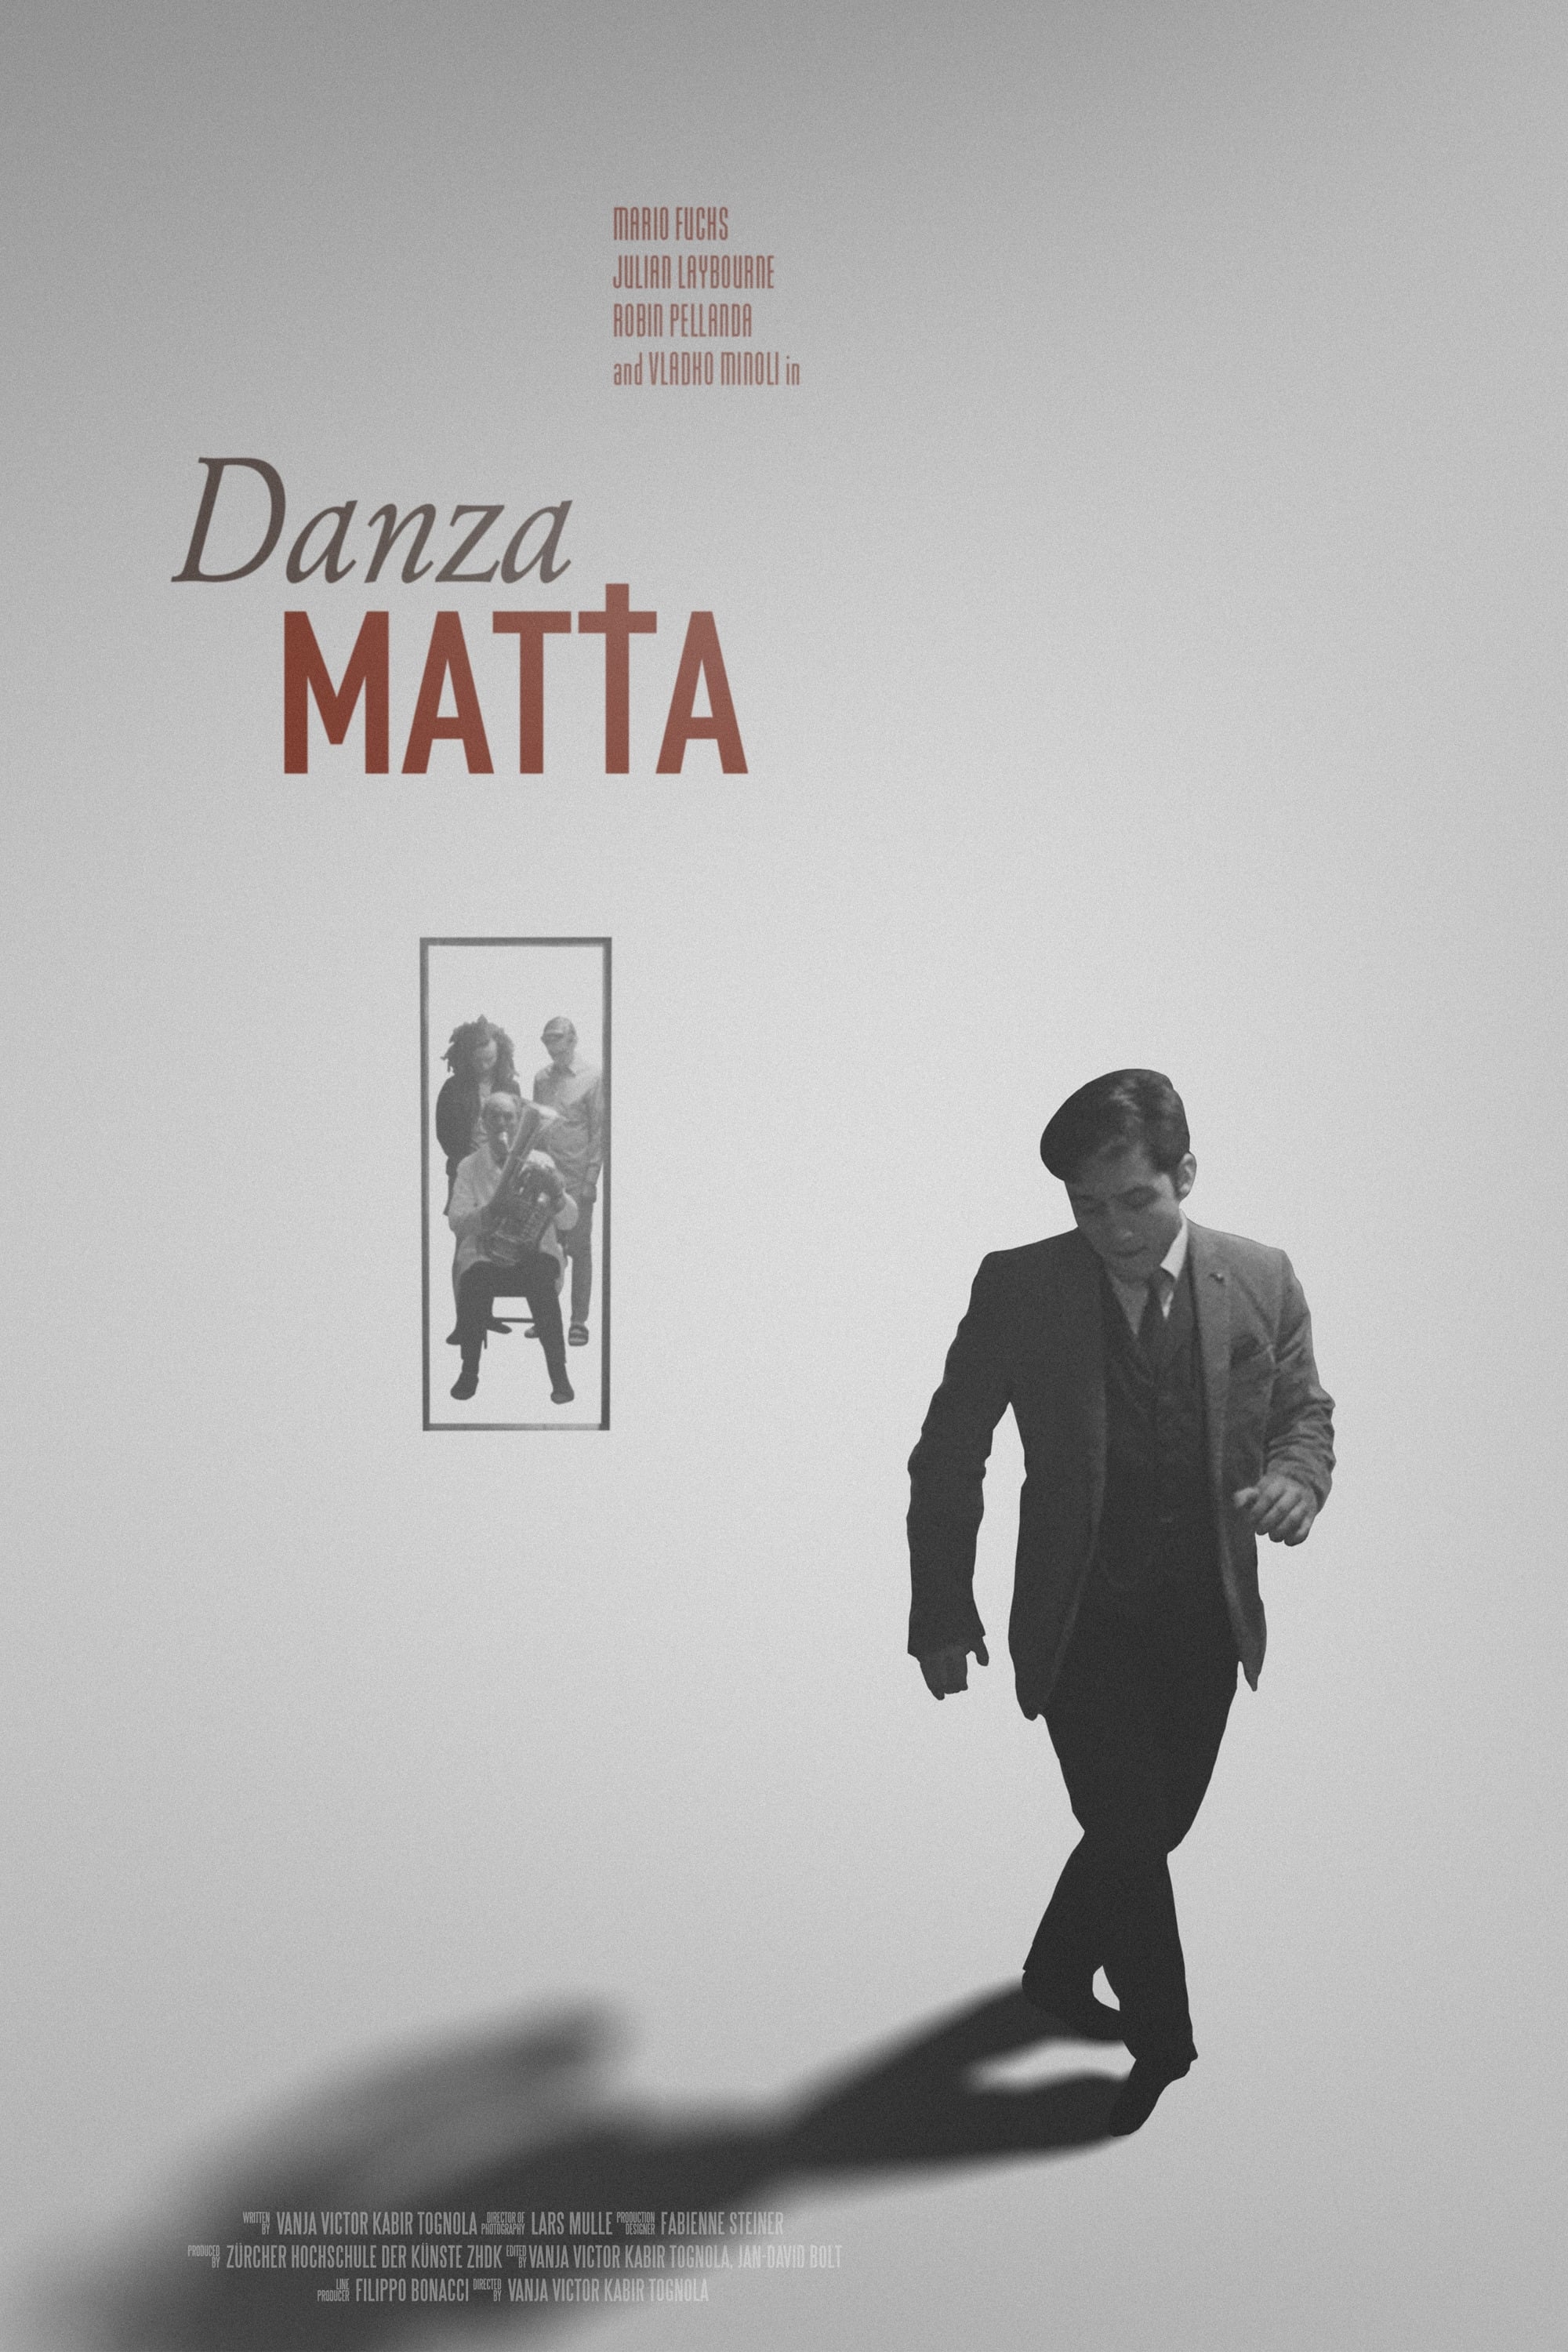 Danzamatta